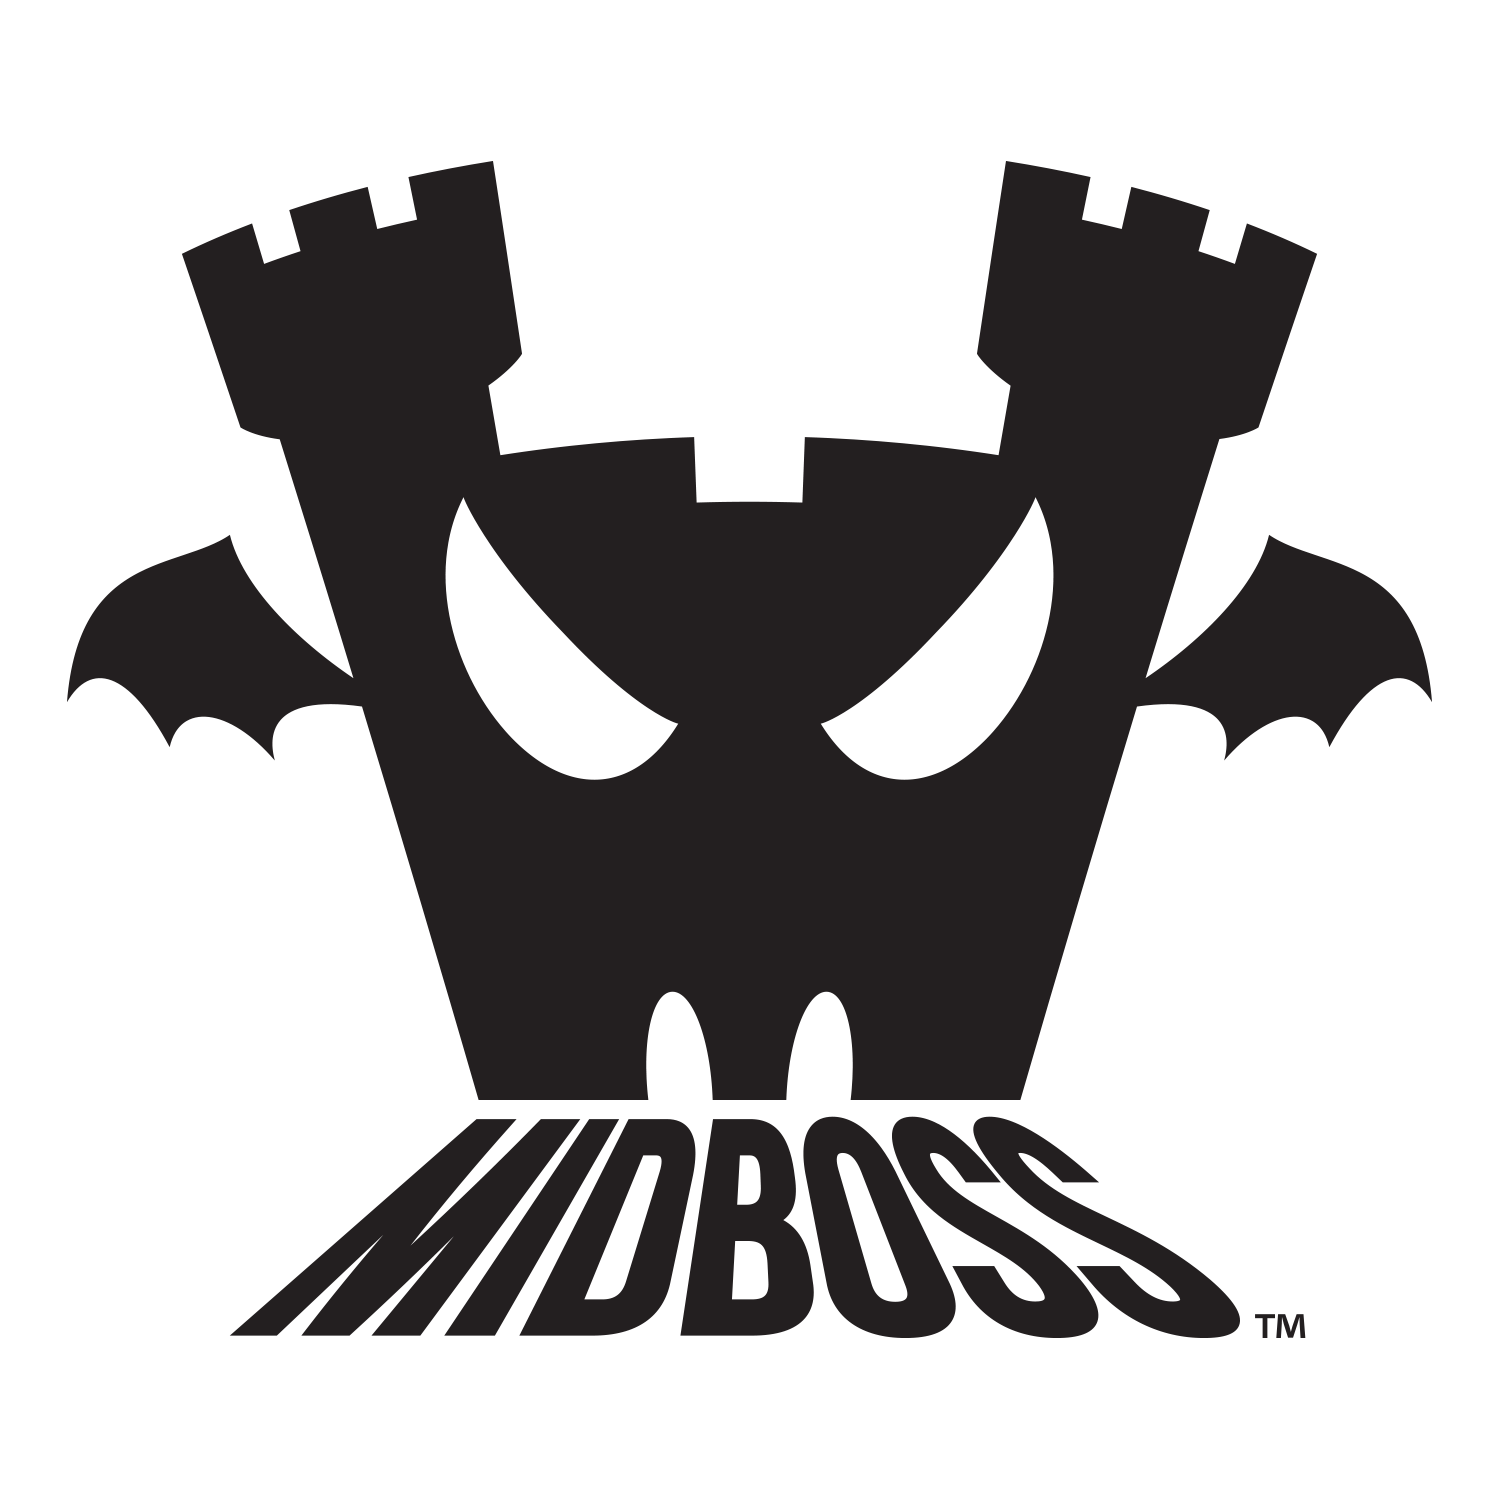 Midboss